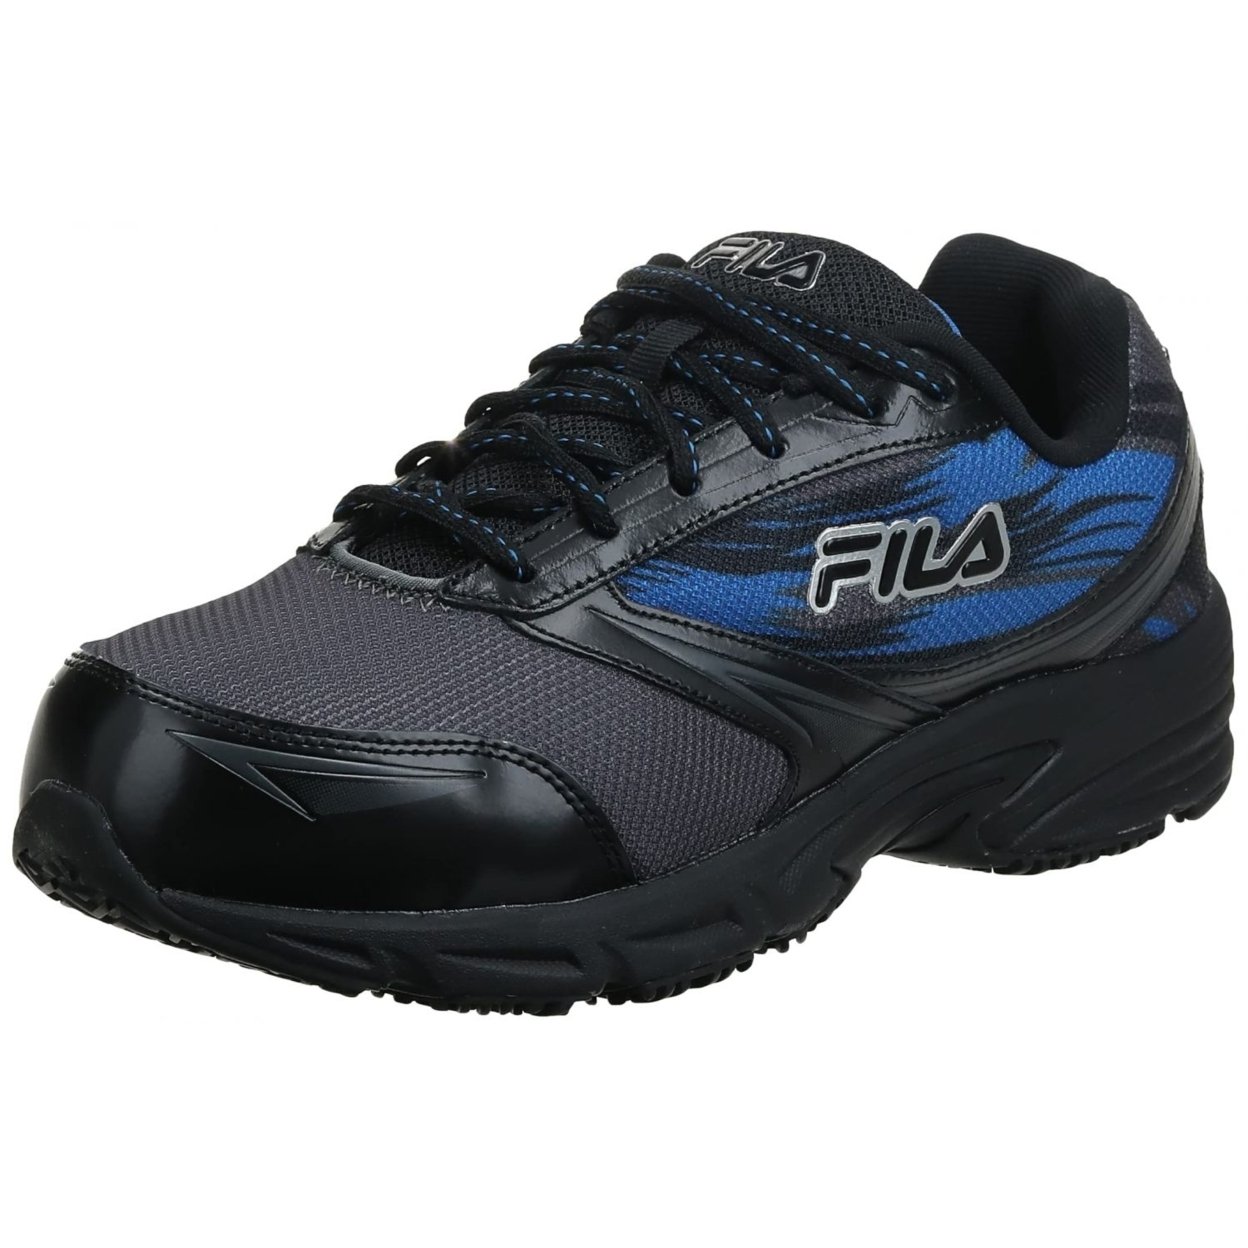 Fila Menâs Memory Meiera 2 Slip Resistant And Composite Toe Work Shoe CSRK/BLK/PRBL - CSRK/BLK/PRBL, 9.5